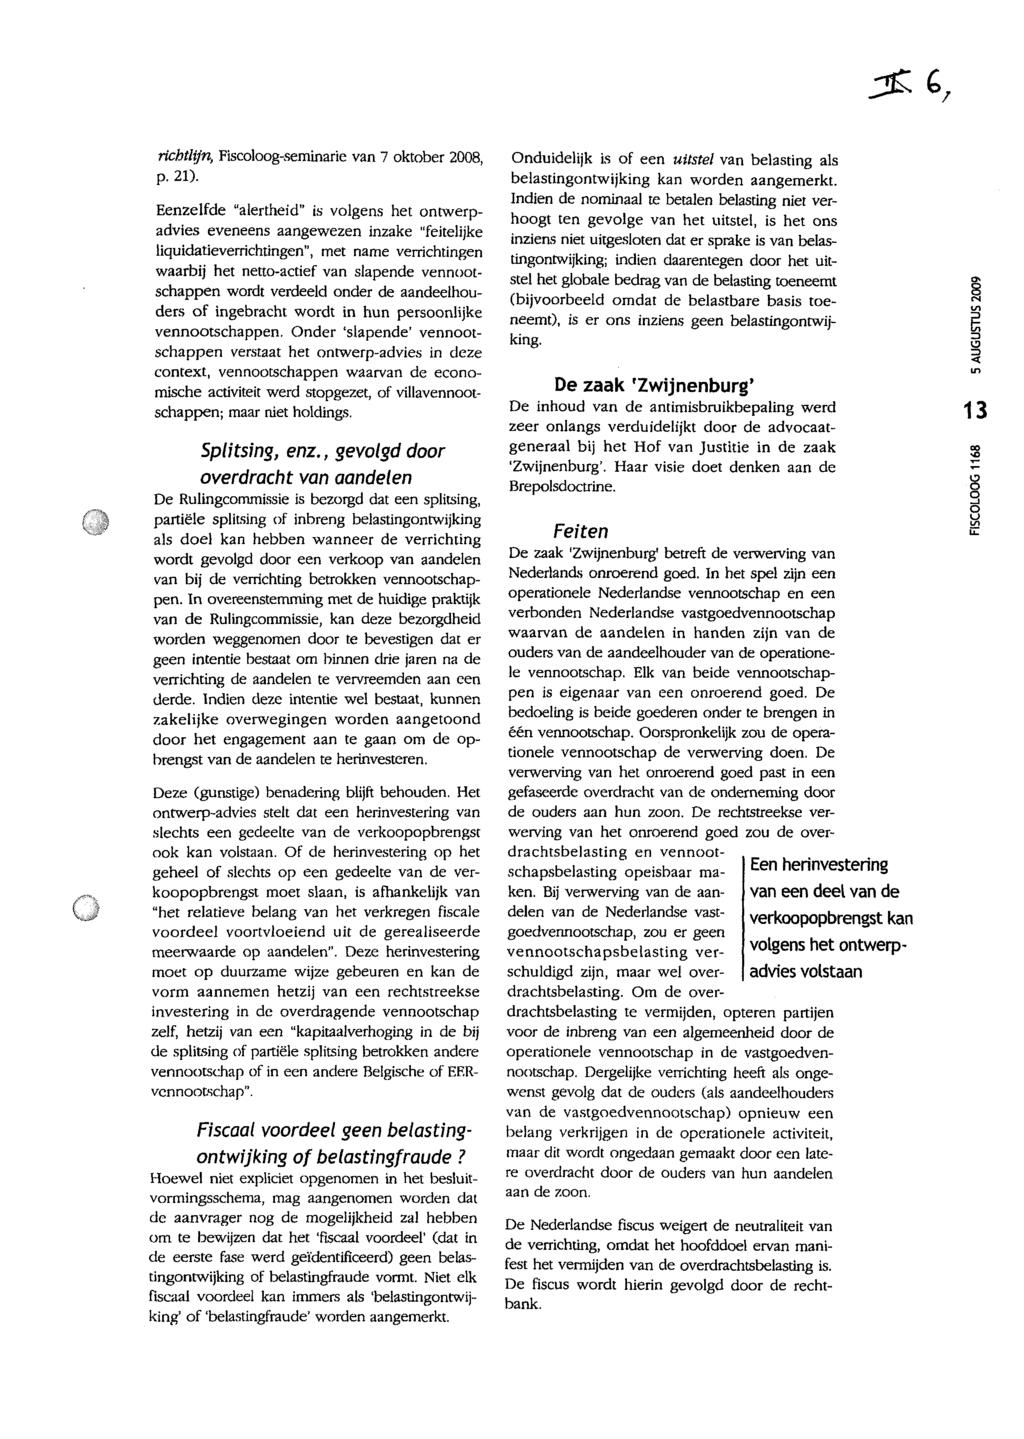 richtlijn, Fiscoloog-seminarie van 7 oktober 2008, p.21).